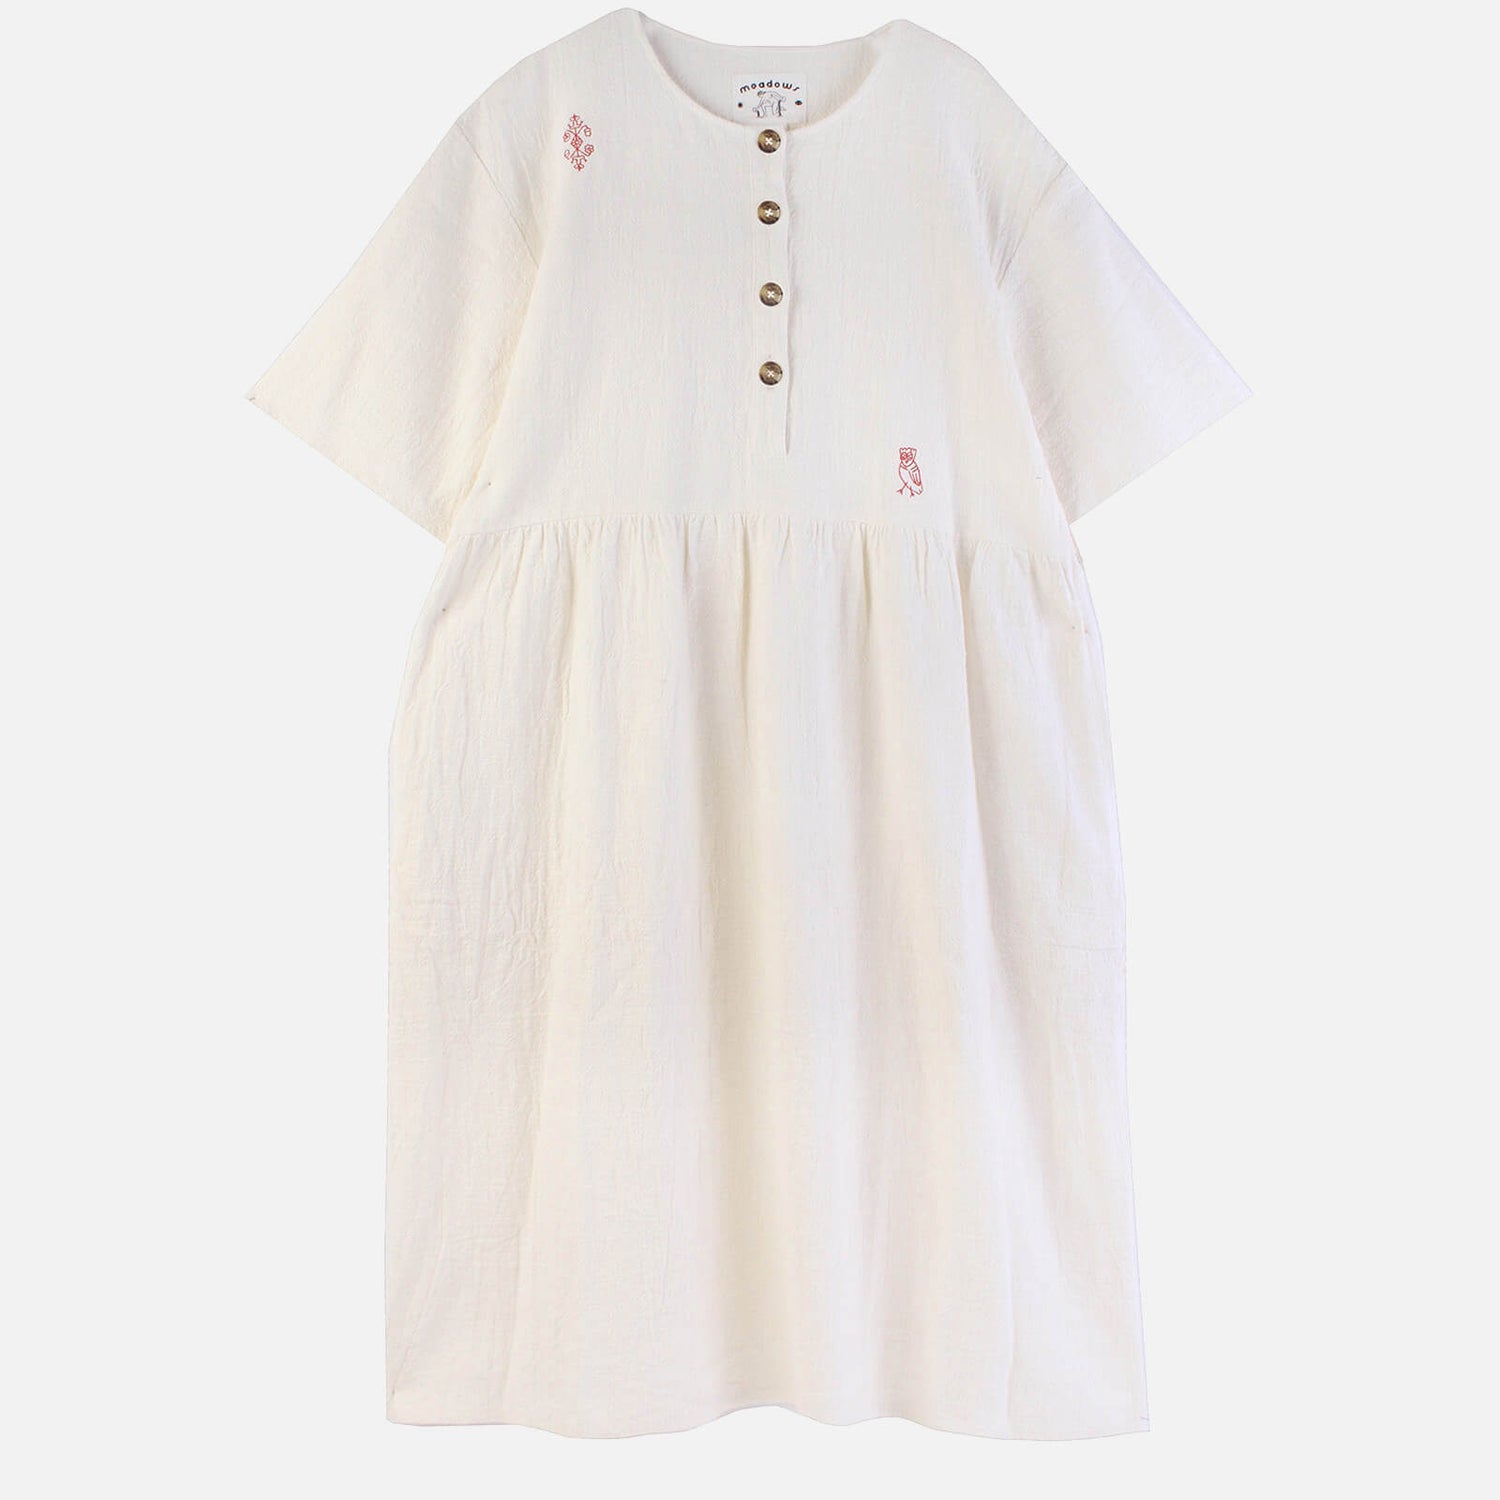 Meadows Women's Tamarind Dress - White - UK 6